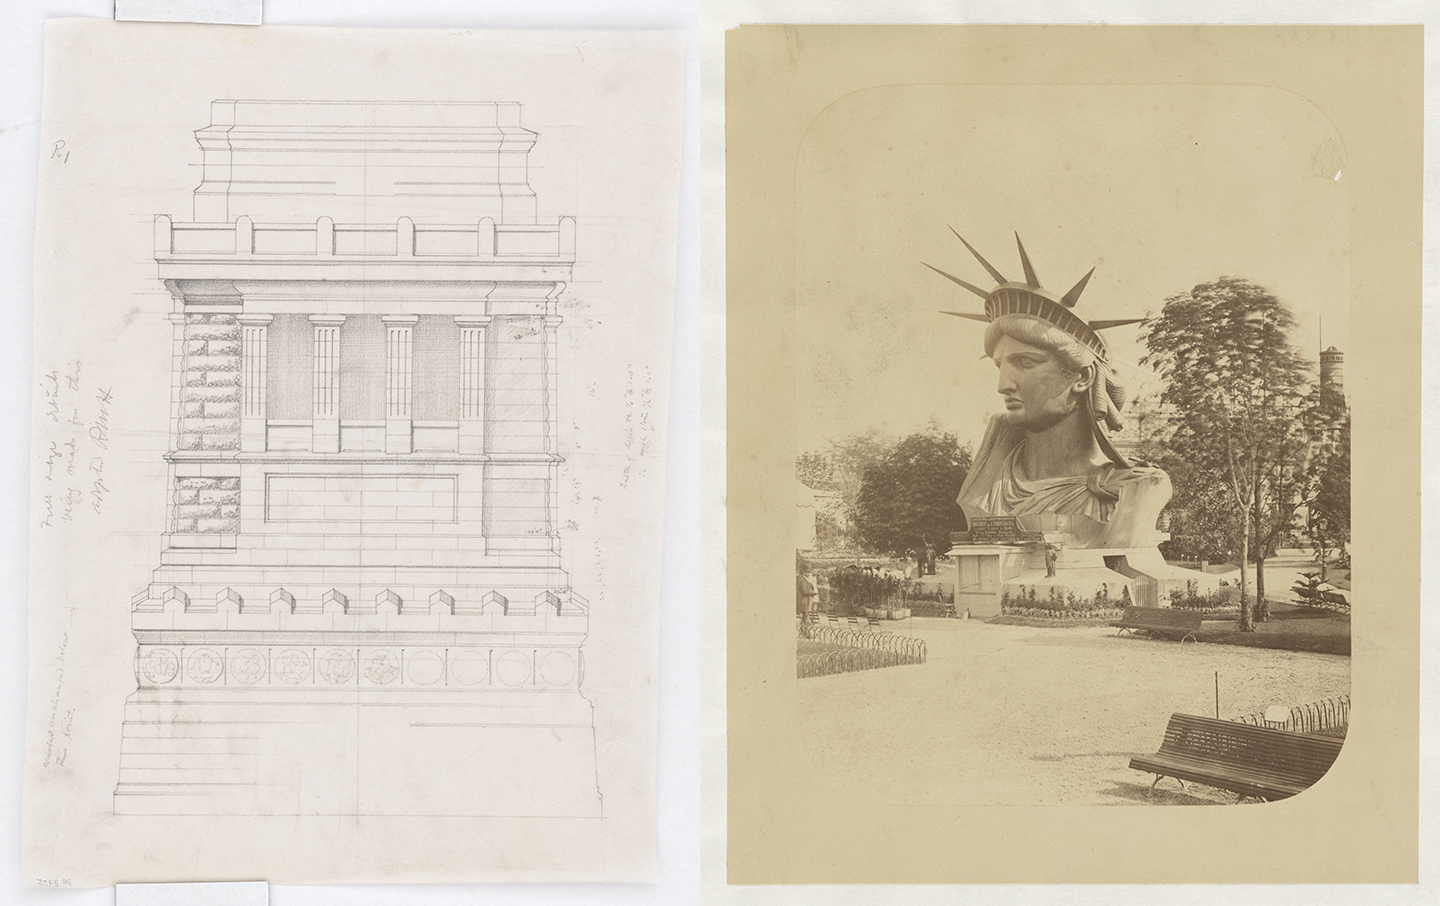 Bức ảnh bên trái là một bản vẽ kiến trúc của bệ đỡ cho Tượng Nữ thần Tự do, do kiến trúc sư Richard Morris Hunt thiết kế, năm 1882. Bản vẽ than chì trên giấy can. Thư viện Quốc hội. (Ảnh: Tài sản công) Bức ảnh bên phải cho thấy phần đầu (bên phải) của Tượng Nữ thần Tự do được trưng bày tại khu vườn Champ-de-Mars, Triển lãm Thế giới, Paris, năm 1878. Thư viện Quốc hội. (Ảnh: Tài sản công)